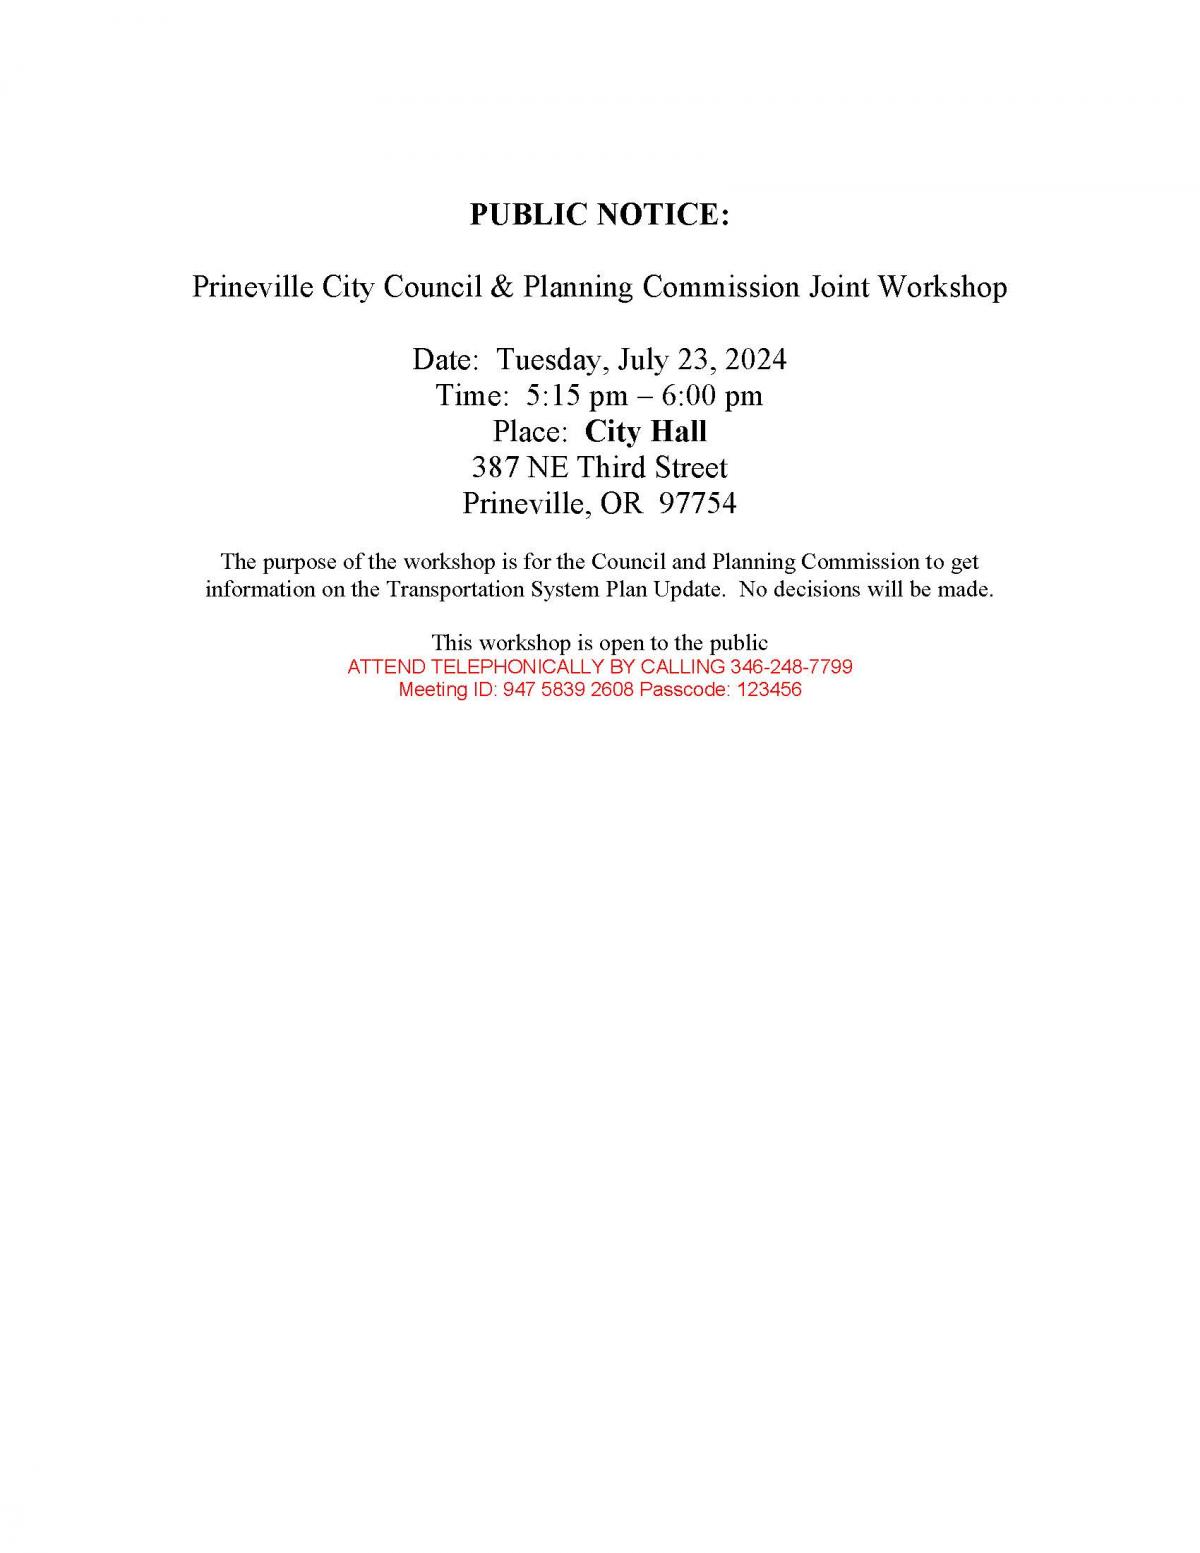 Public Notice - City Council - Planning Commission Joint Workshop